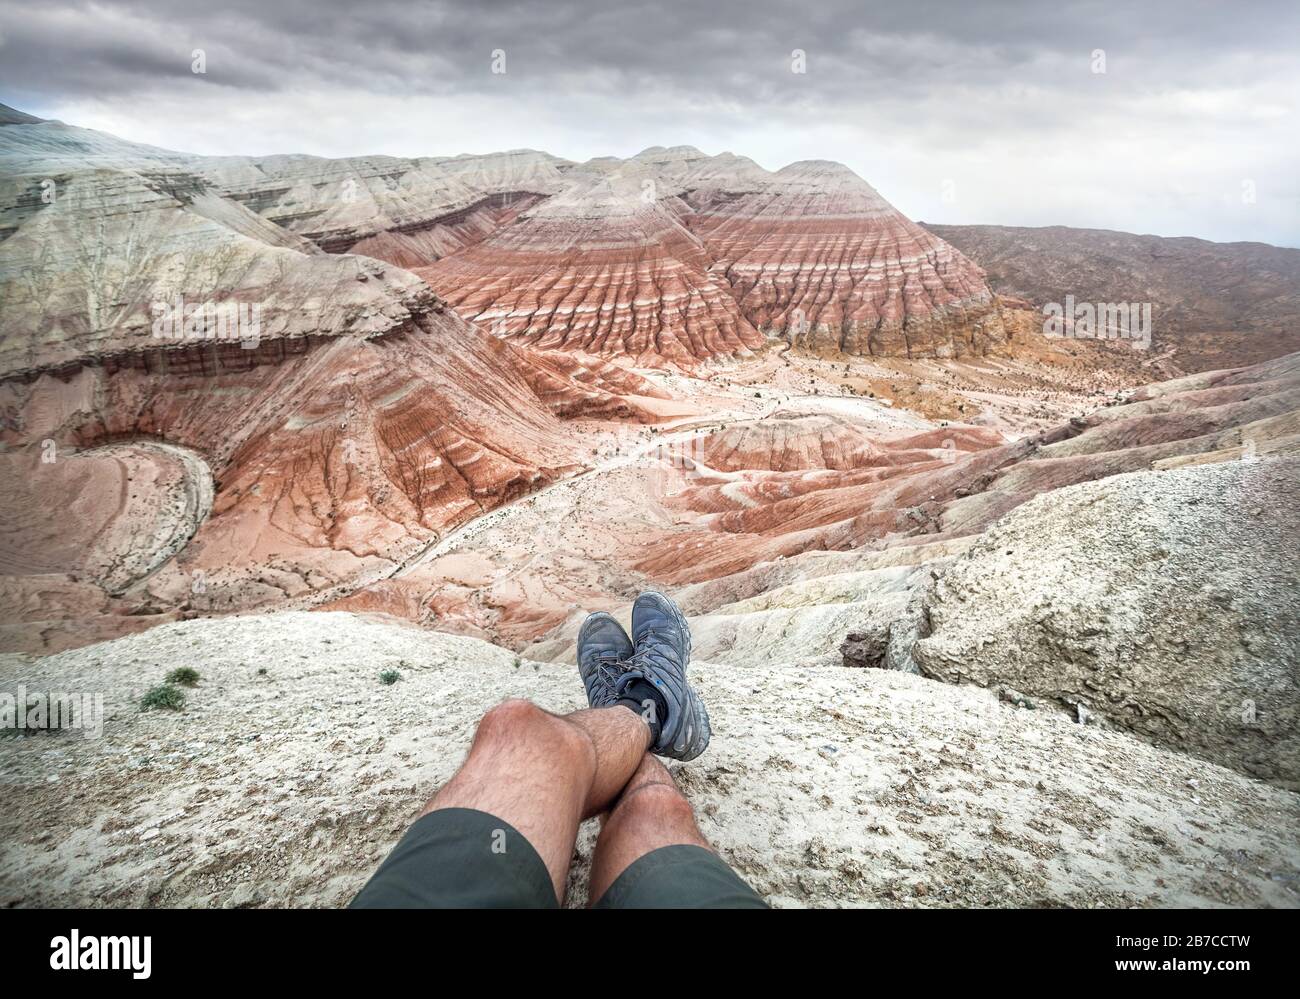 Gambe turistiche con scarpe grigie sulle Desert Mountains con strati rossi e bianchi su sfondo cielo nuvoloso Foto Stock